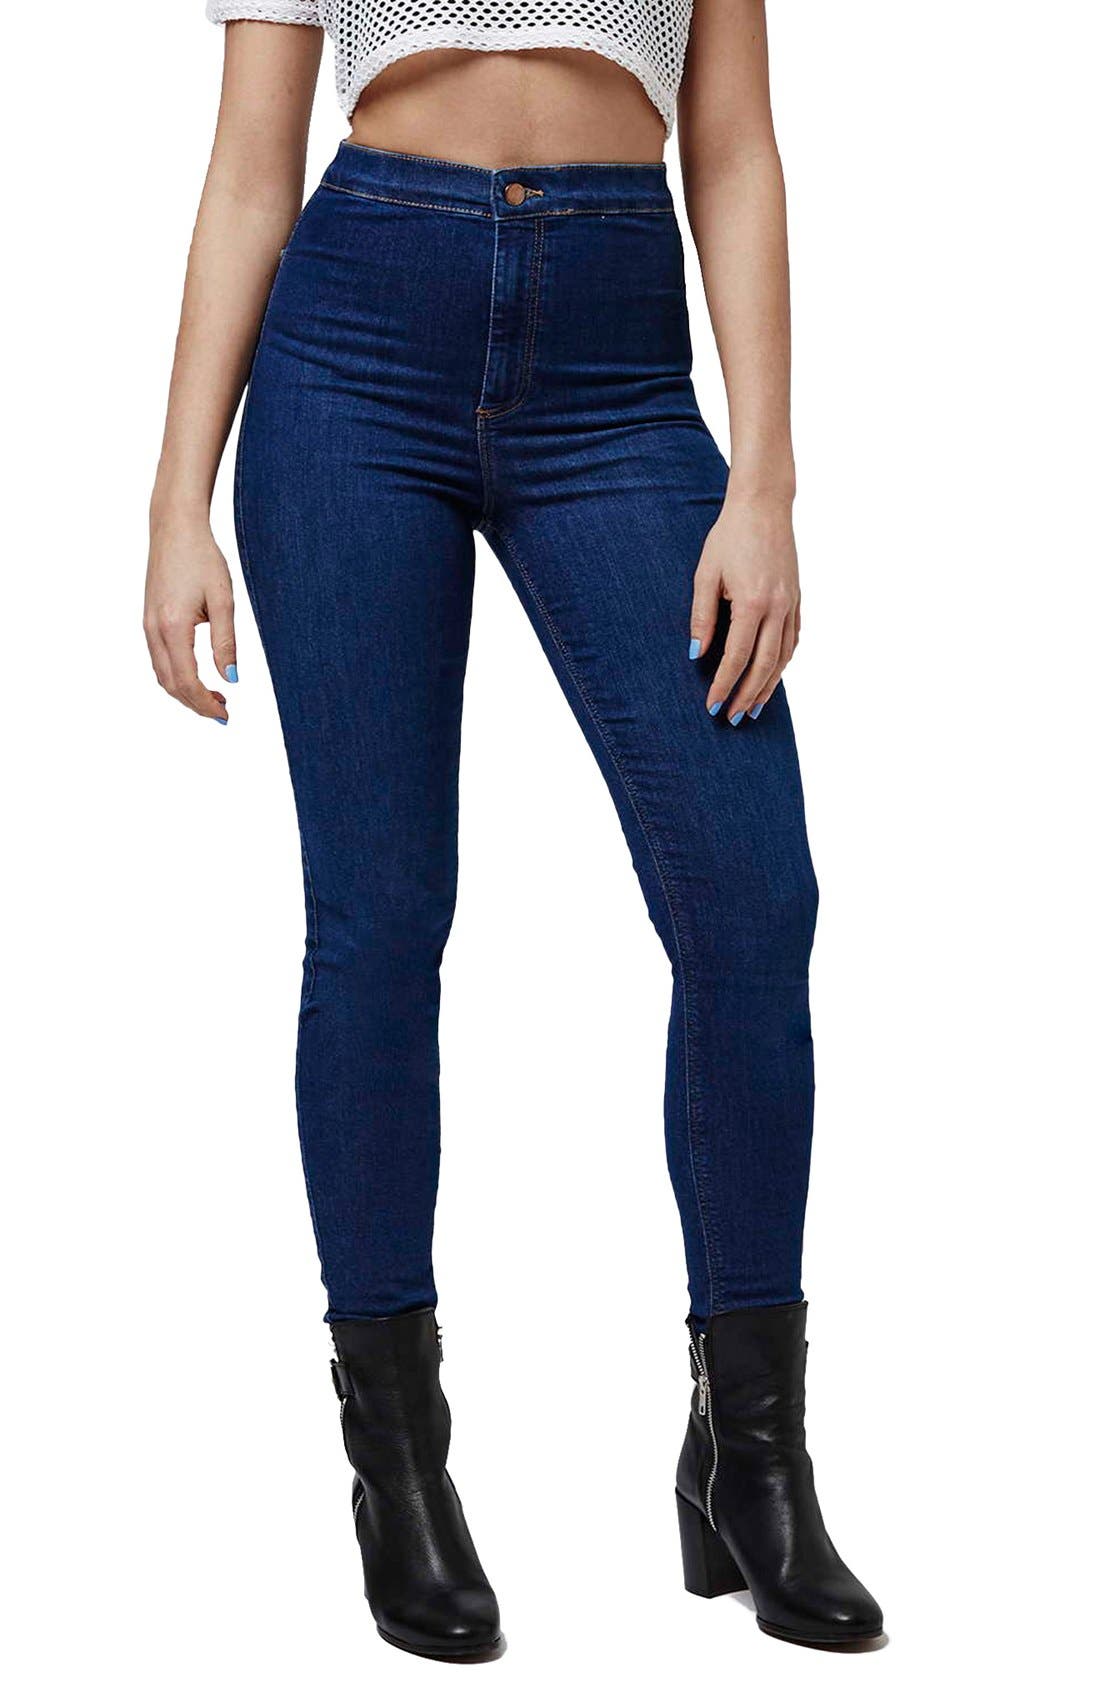 jeans super high waist